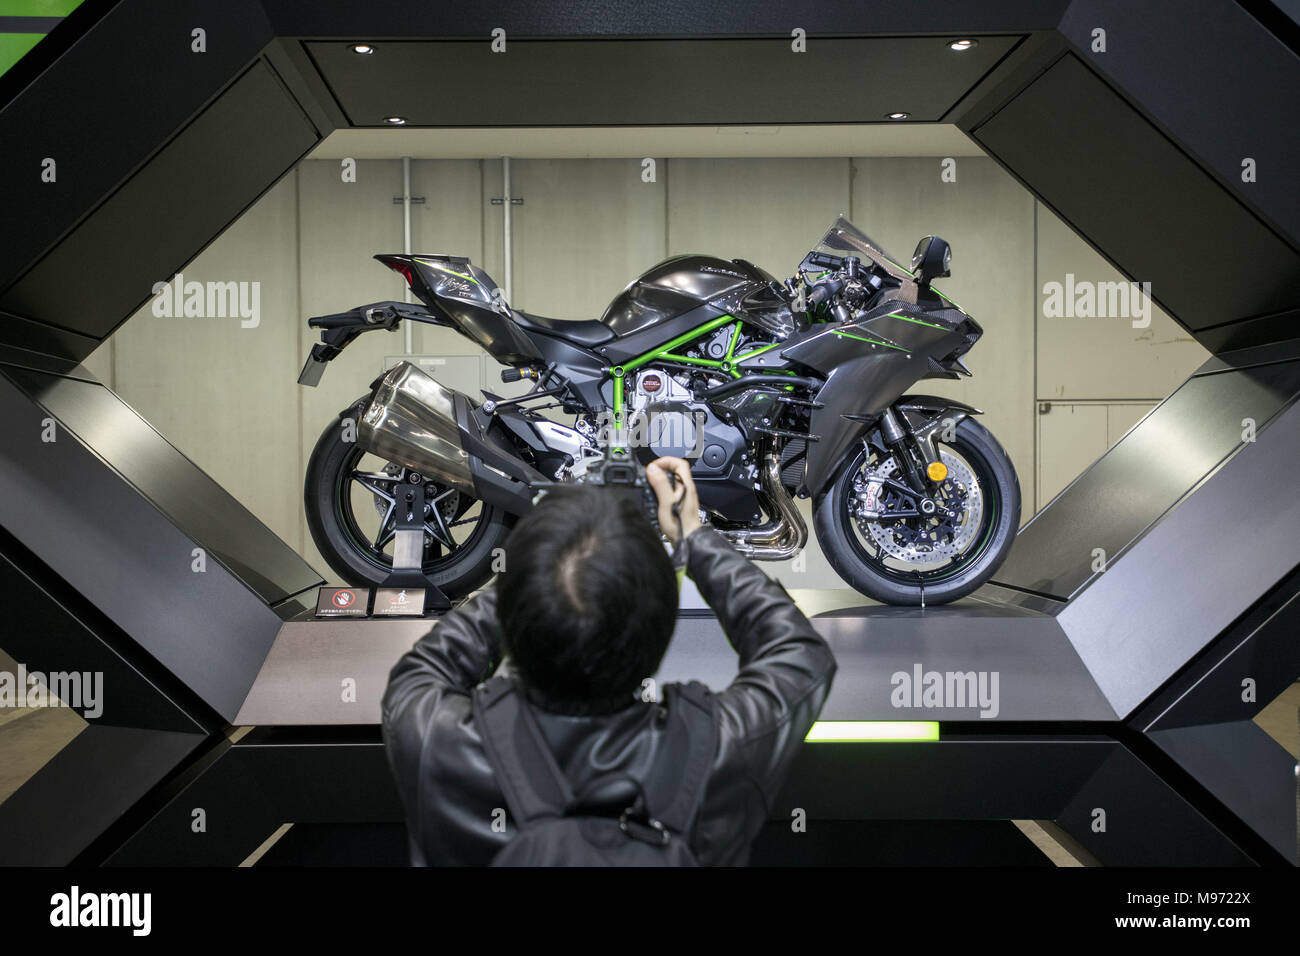 Tokyo, Tokyo, Japon. Mar 23, 2018. Les visiteurs d'un regarde une moto  kawasaki Ninja H2, au cours de la 45e Salon de la moto de Tokyo à Tokyo,  Japon, 23 mars 2018.